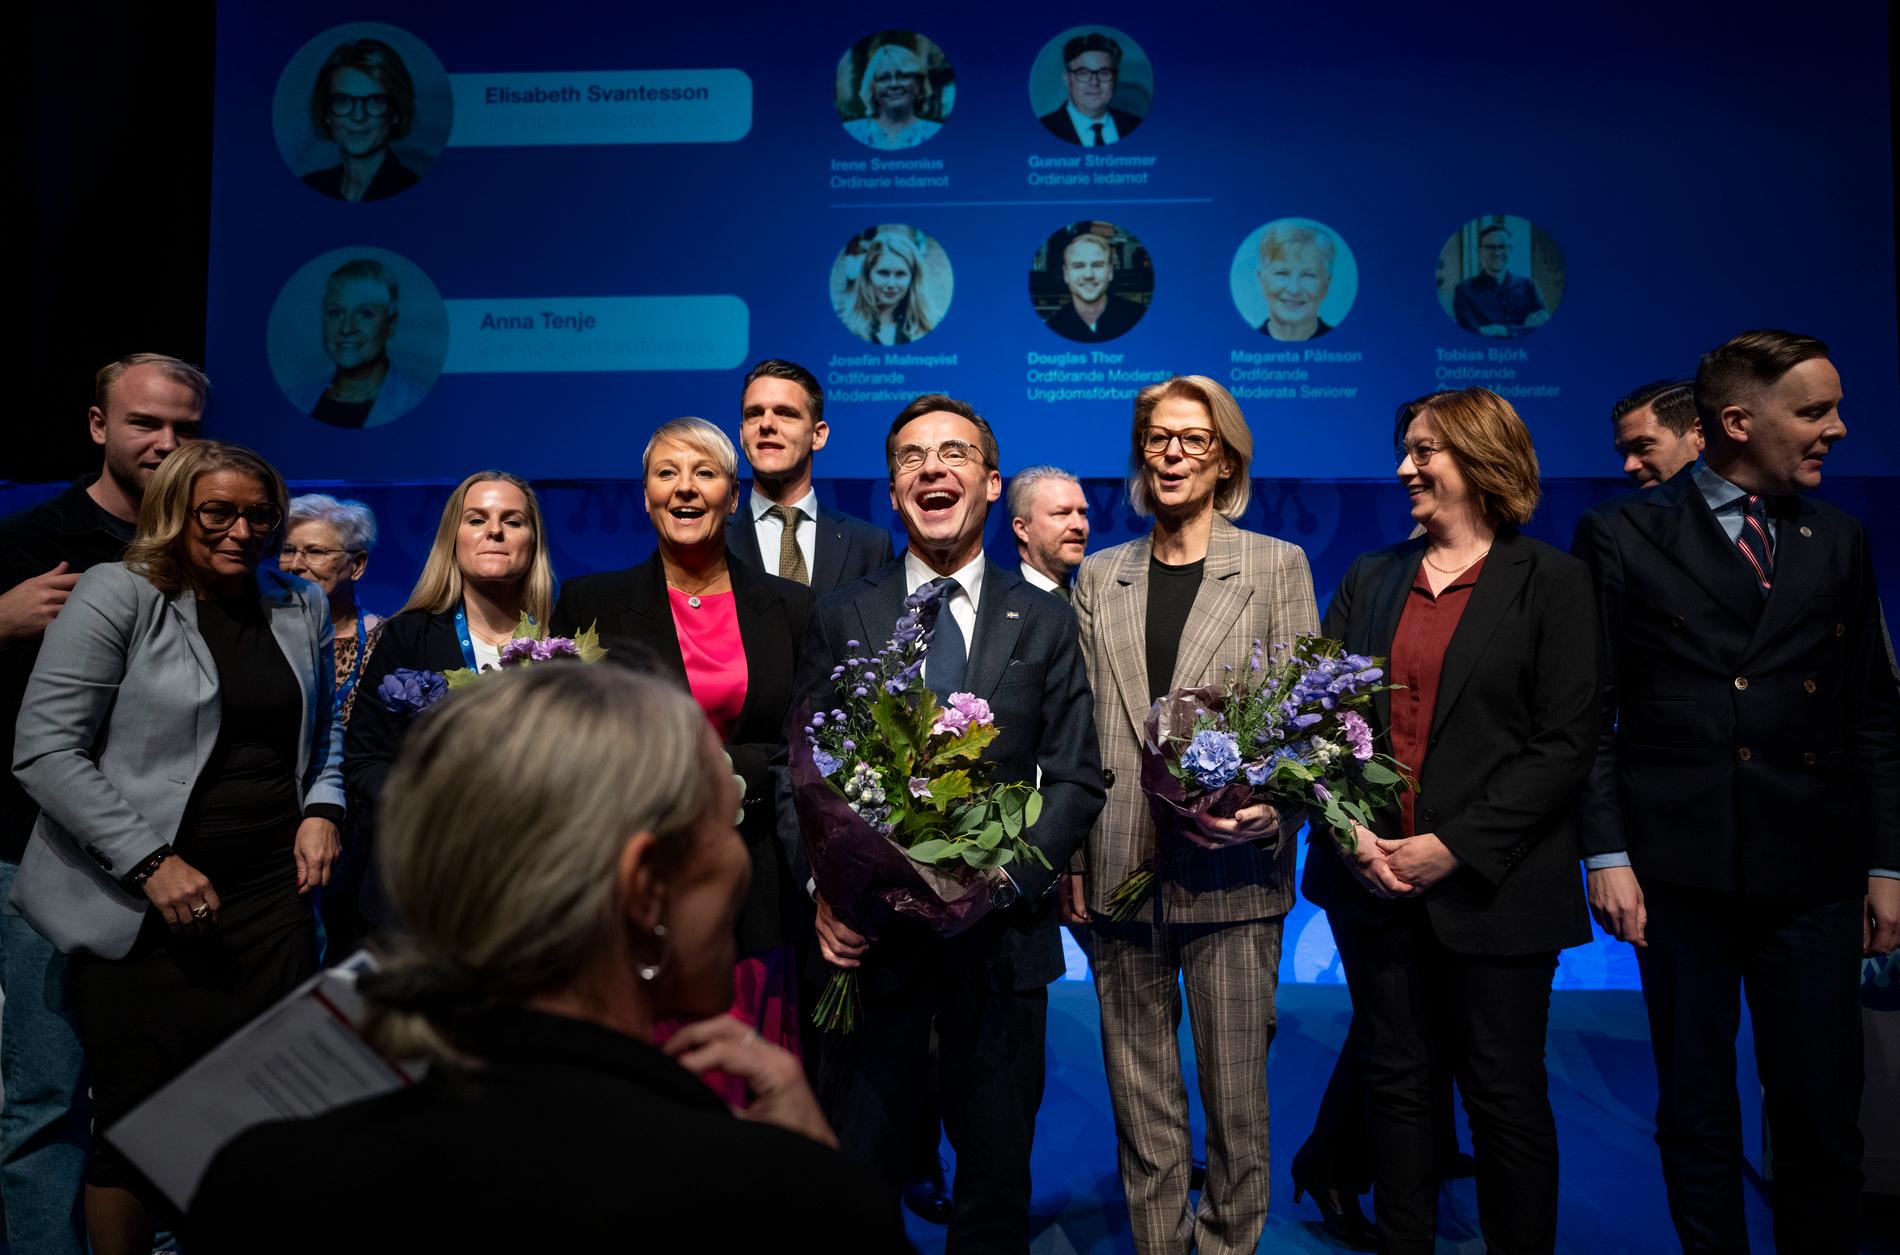 Moderaternas partistyrelse under stämman. Ulf Kristersson valdes om som partiordförande. Till vänster andre vice ordförande, äldre- och socialförsäkringsminister Anna Tenje, till höger förste vice ordförande, finansminister Elisabet Svantesson.